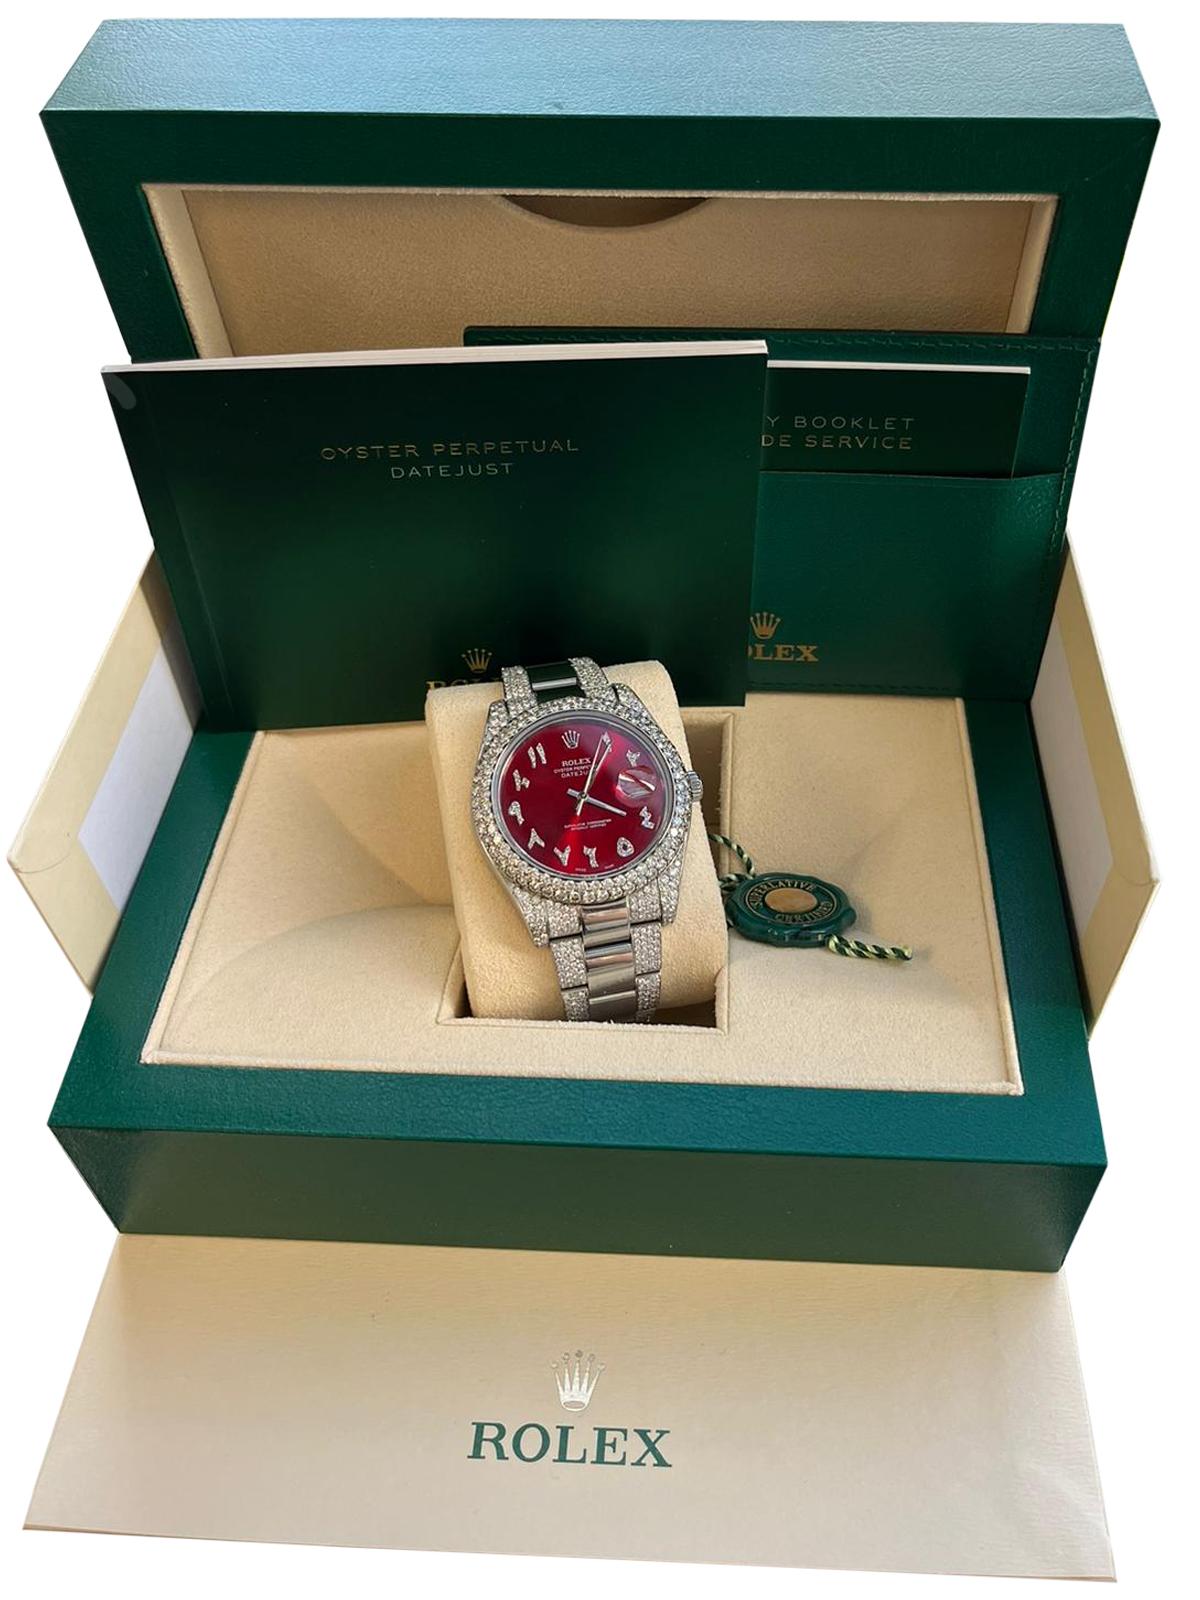 La montre Rolex 116334 Datejust II 41mm with Aftermarket Diamond Red Arabic Dial est un garde-temps frappant d'élégance et de sophistication. Avec sa lunette en diamant Aftermarket de 2,5ctw et son captivant cadran arabe rouge avec bracelet en